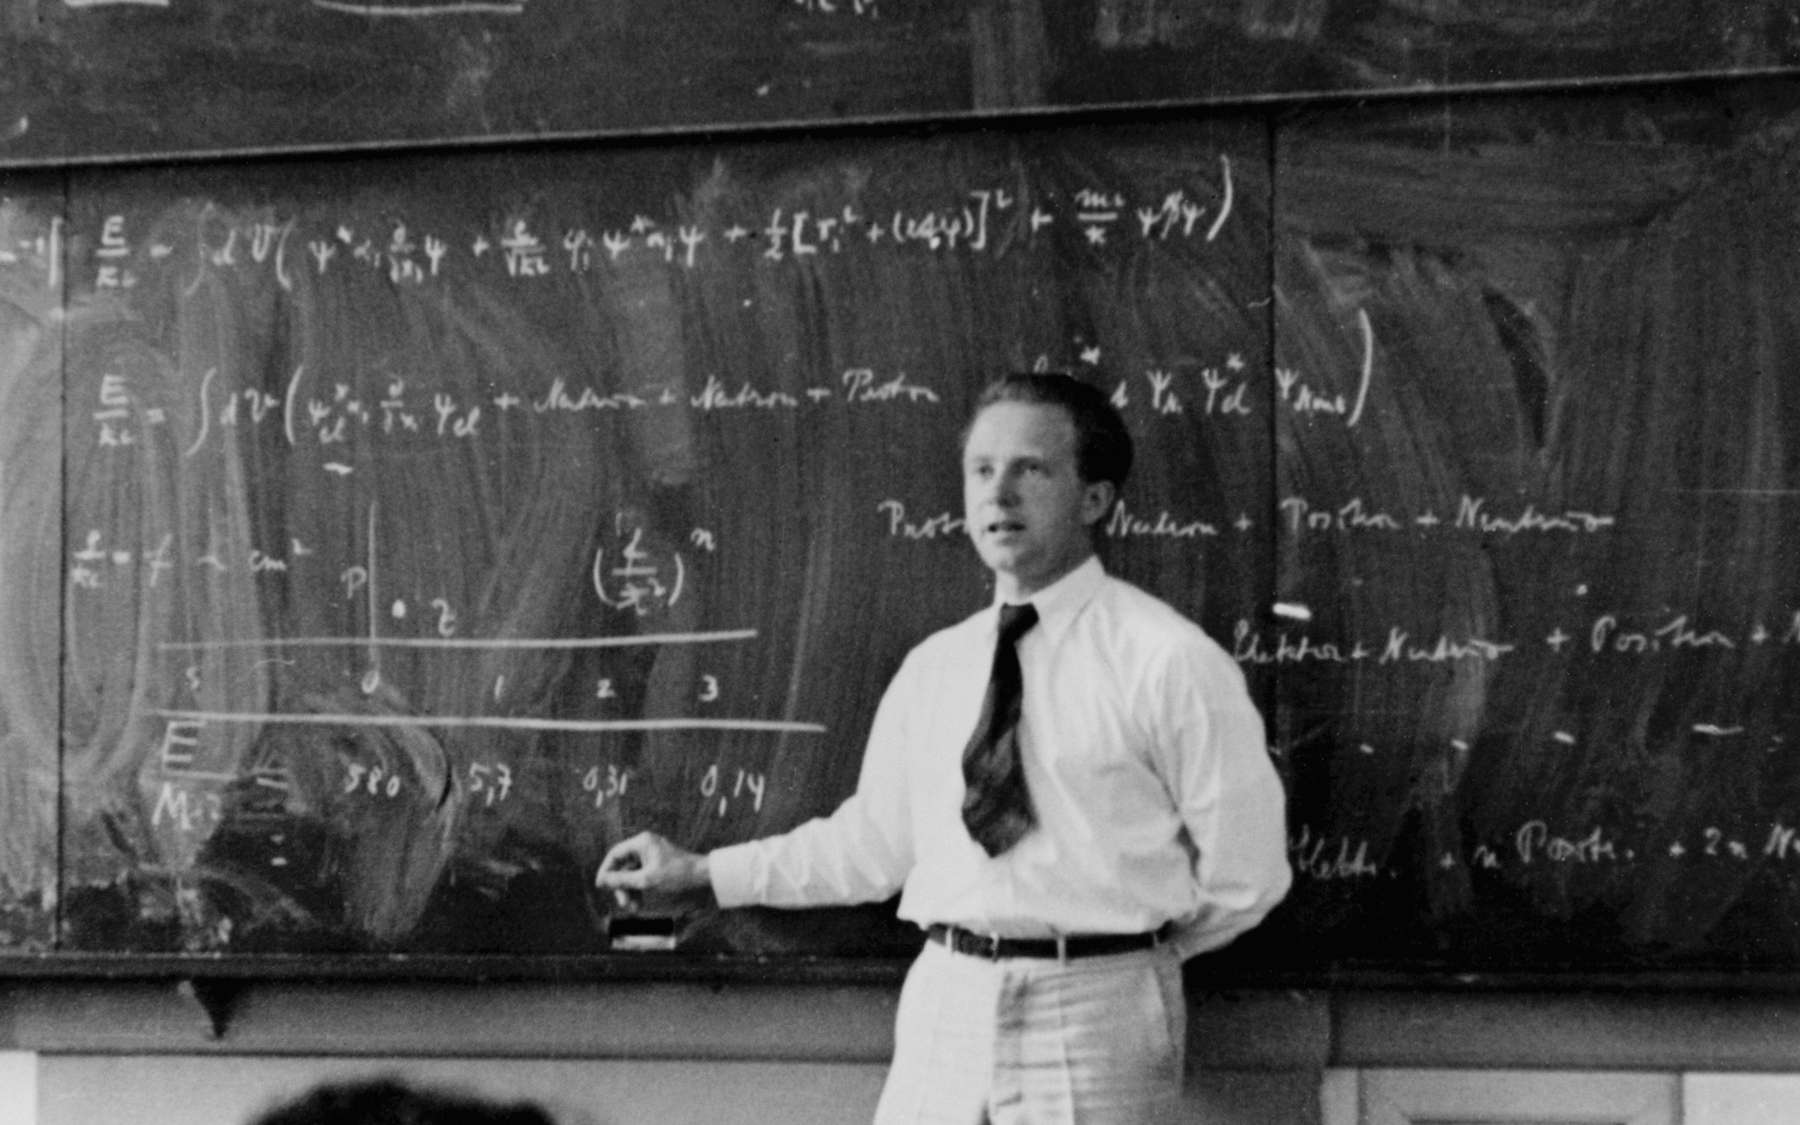 Le physicien allemand Werner Heinsenberg (1901-1976) a révolutionné la physique en découvrant en 1925 la mécanique quantique matricielle. On le voit ici expliquer la théorie quantique en 1936. Heisenberg avait rejeté la notion de trajectoire pour les électrons circulant au sein d'un atome, jetant ainsi les bases d'une nouvelle conception de la géométrie de l'espace et du temps, et pas seulement d'une nouvelle physique de la matière et du rayonnement. © AIP Emilio Segre Visual Archives